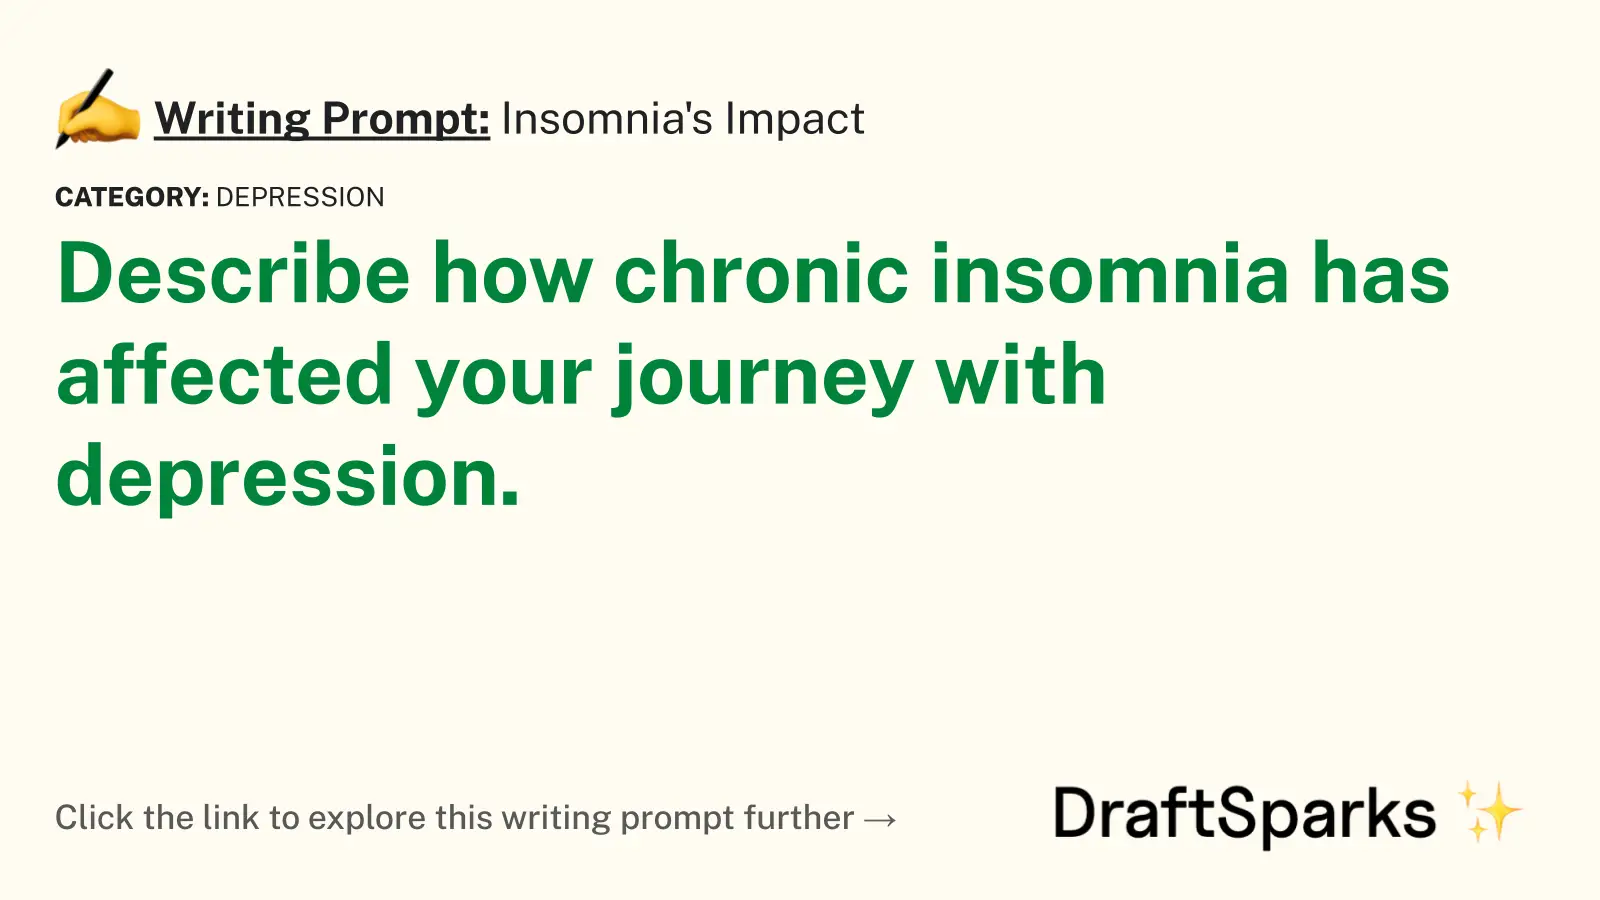 Insomnia’s Impact